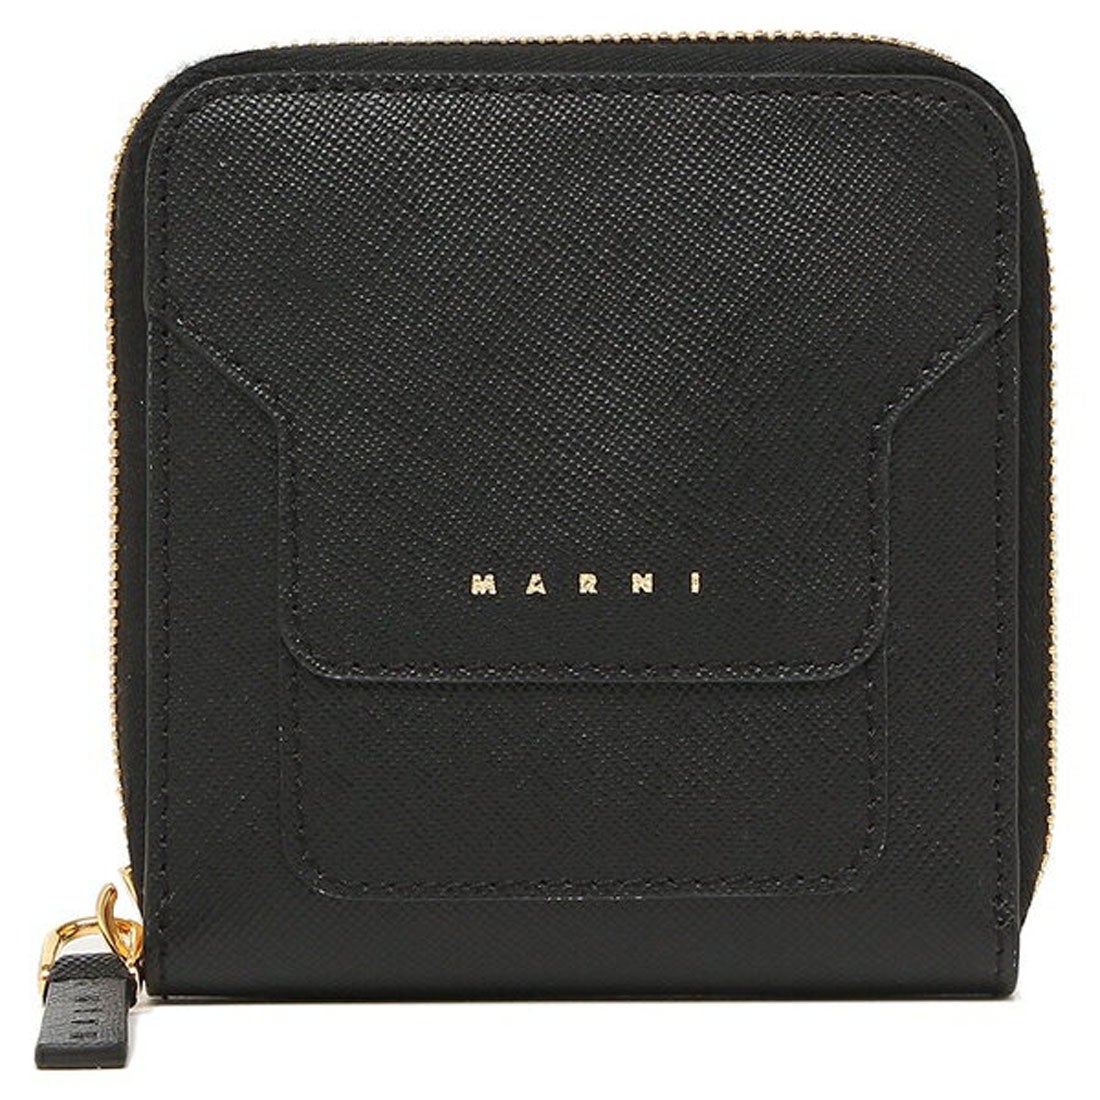 マルニ MARNI 財布 二つ折り財布 ジップアラウンドウォレット ブラック